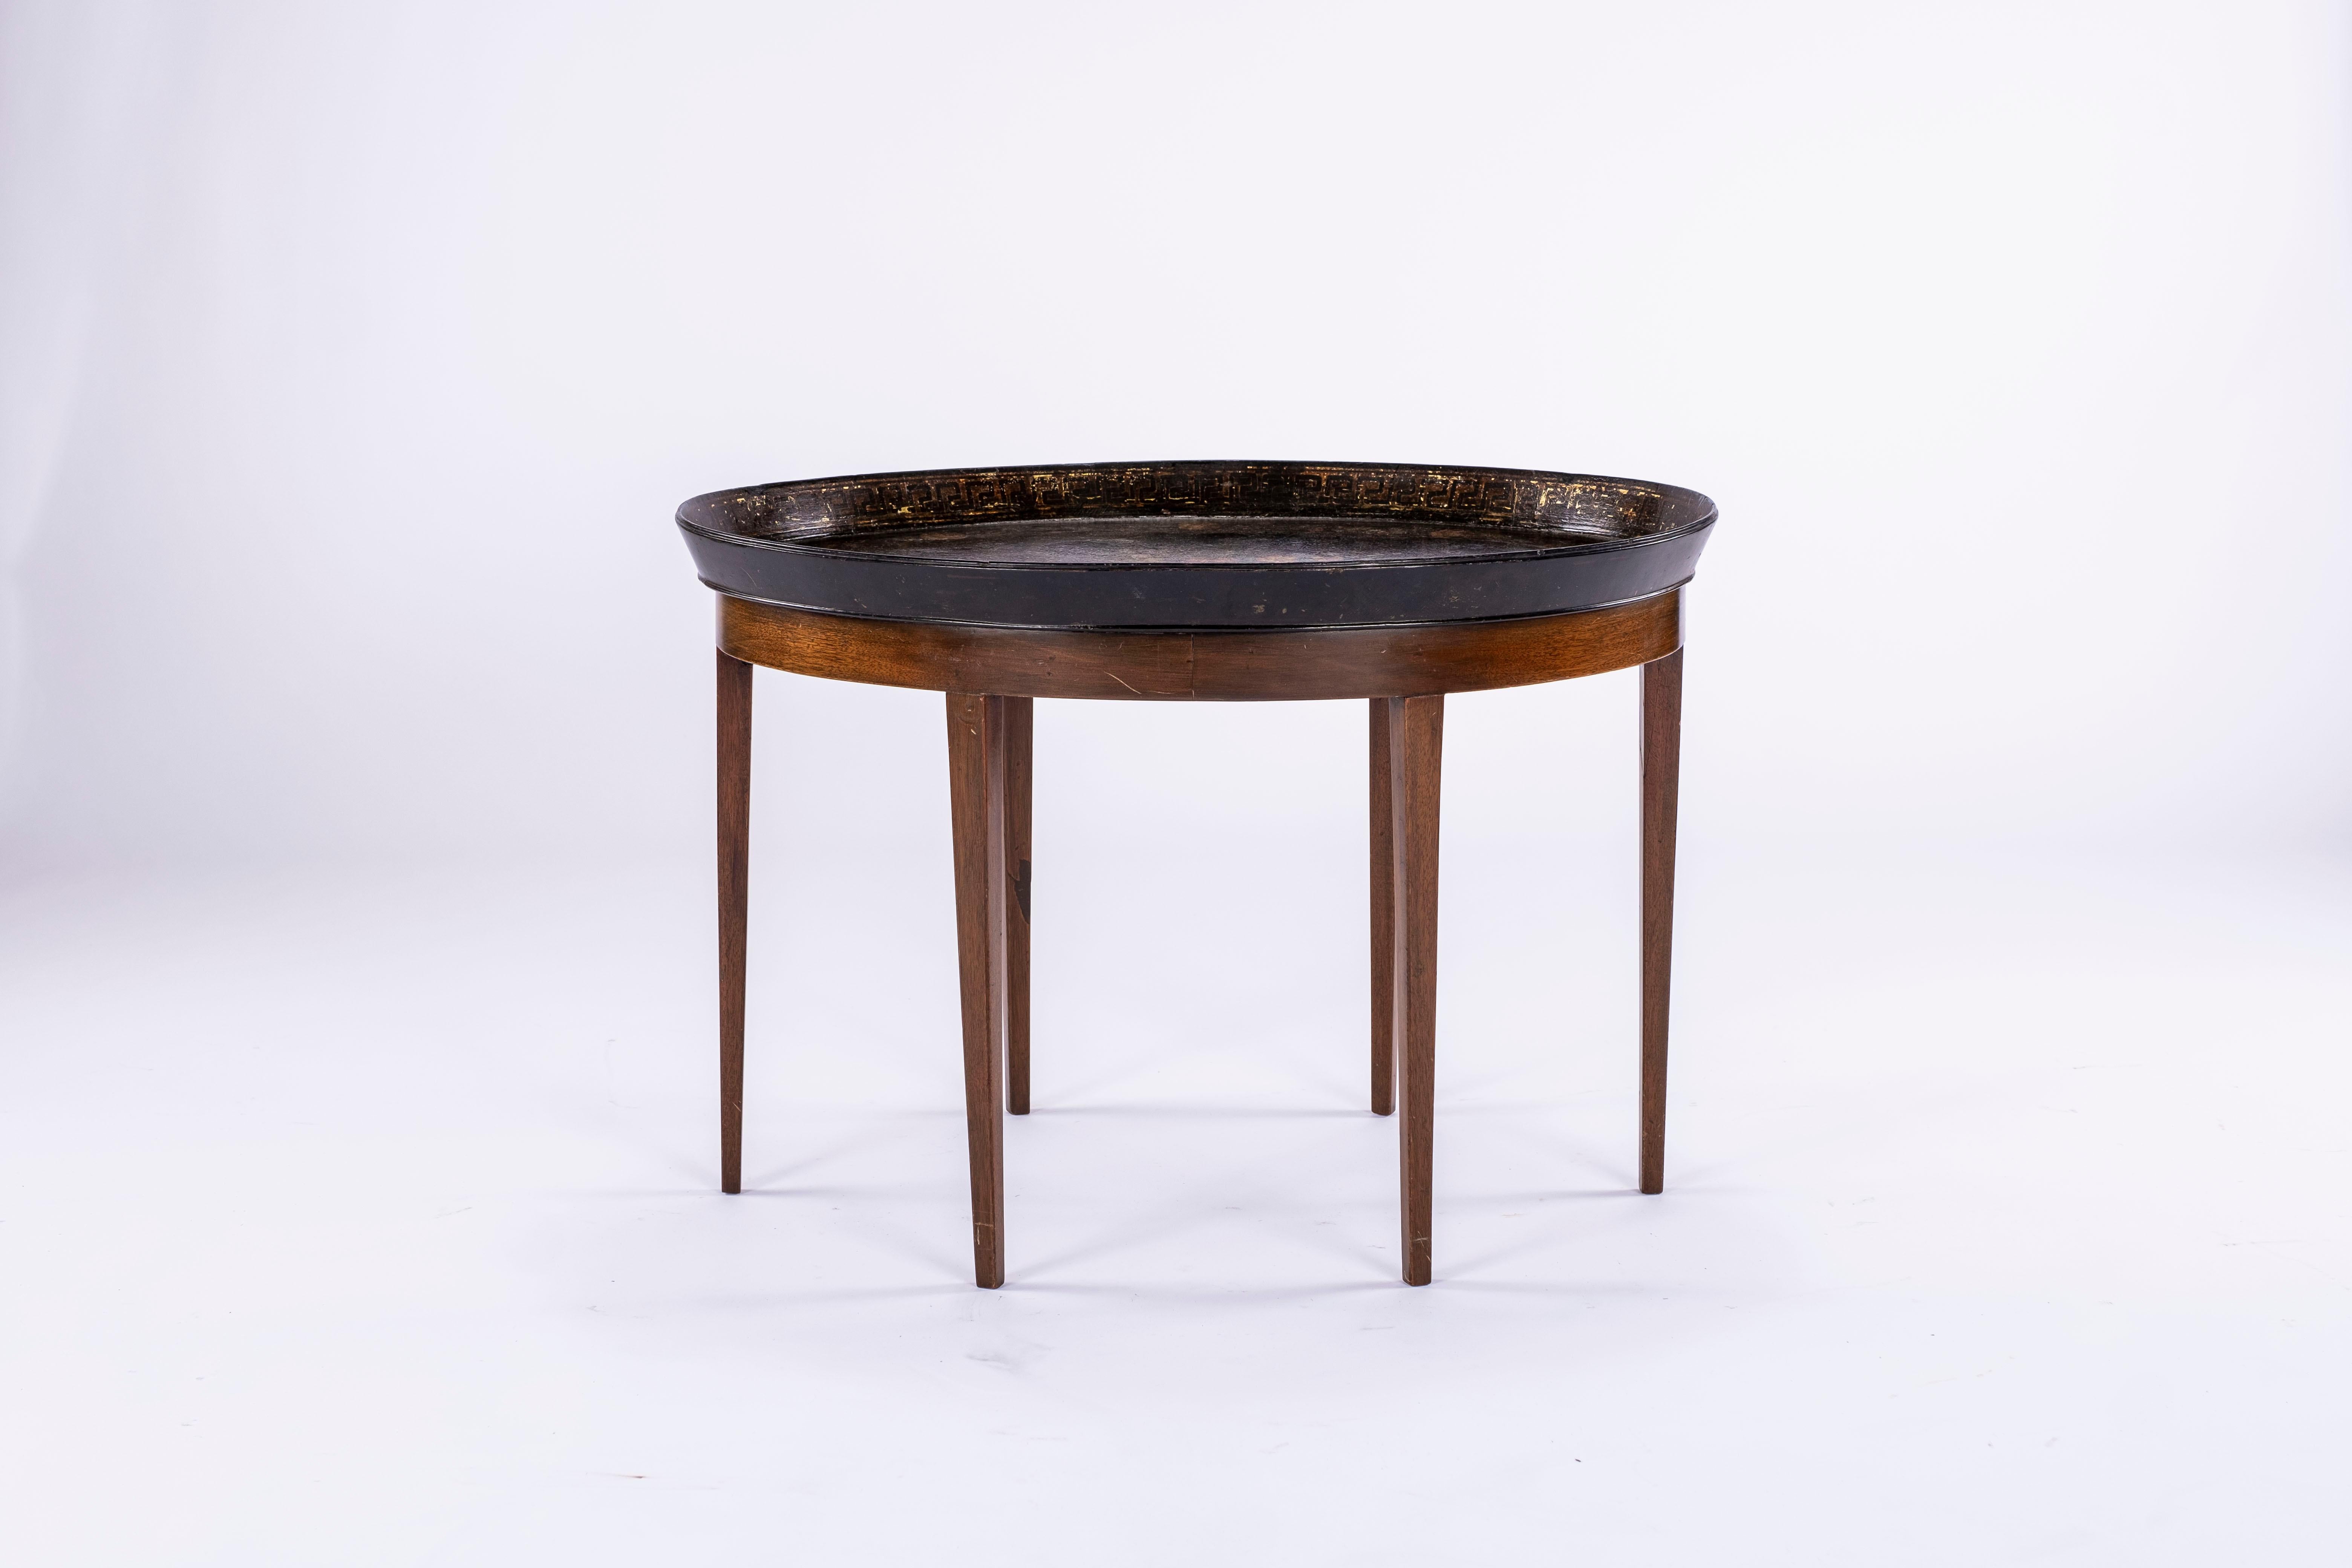 Table à plateau ovale en papier mâché du 19e siècle sur un support à six pieds en bois personnalisé. Motif floral au centre et sur le pourtour. Mesure : La lèvre mesure 2